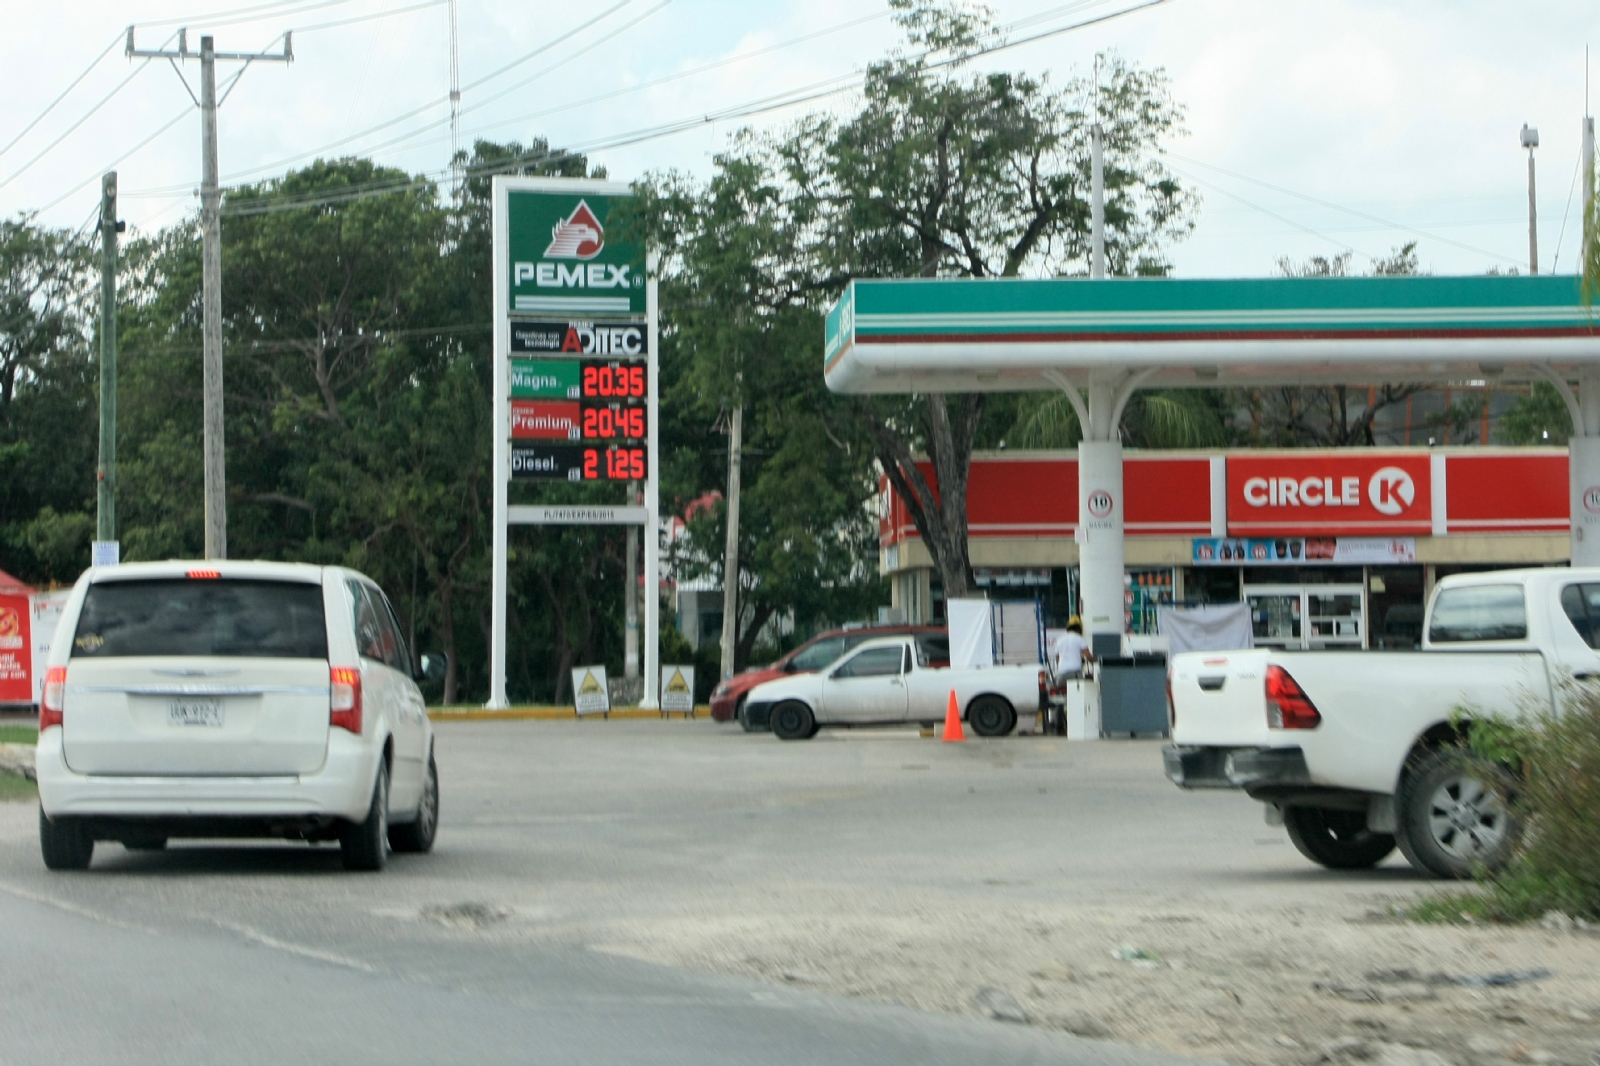 En Quintana Roo hay una gasolinera por cada 249 kilómetros cuadrados, según el estudio realizado por PwC